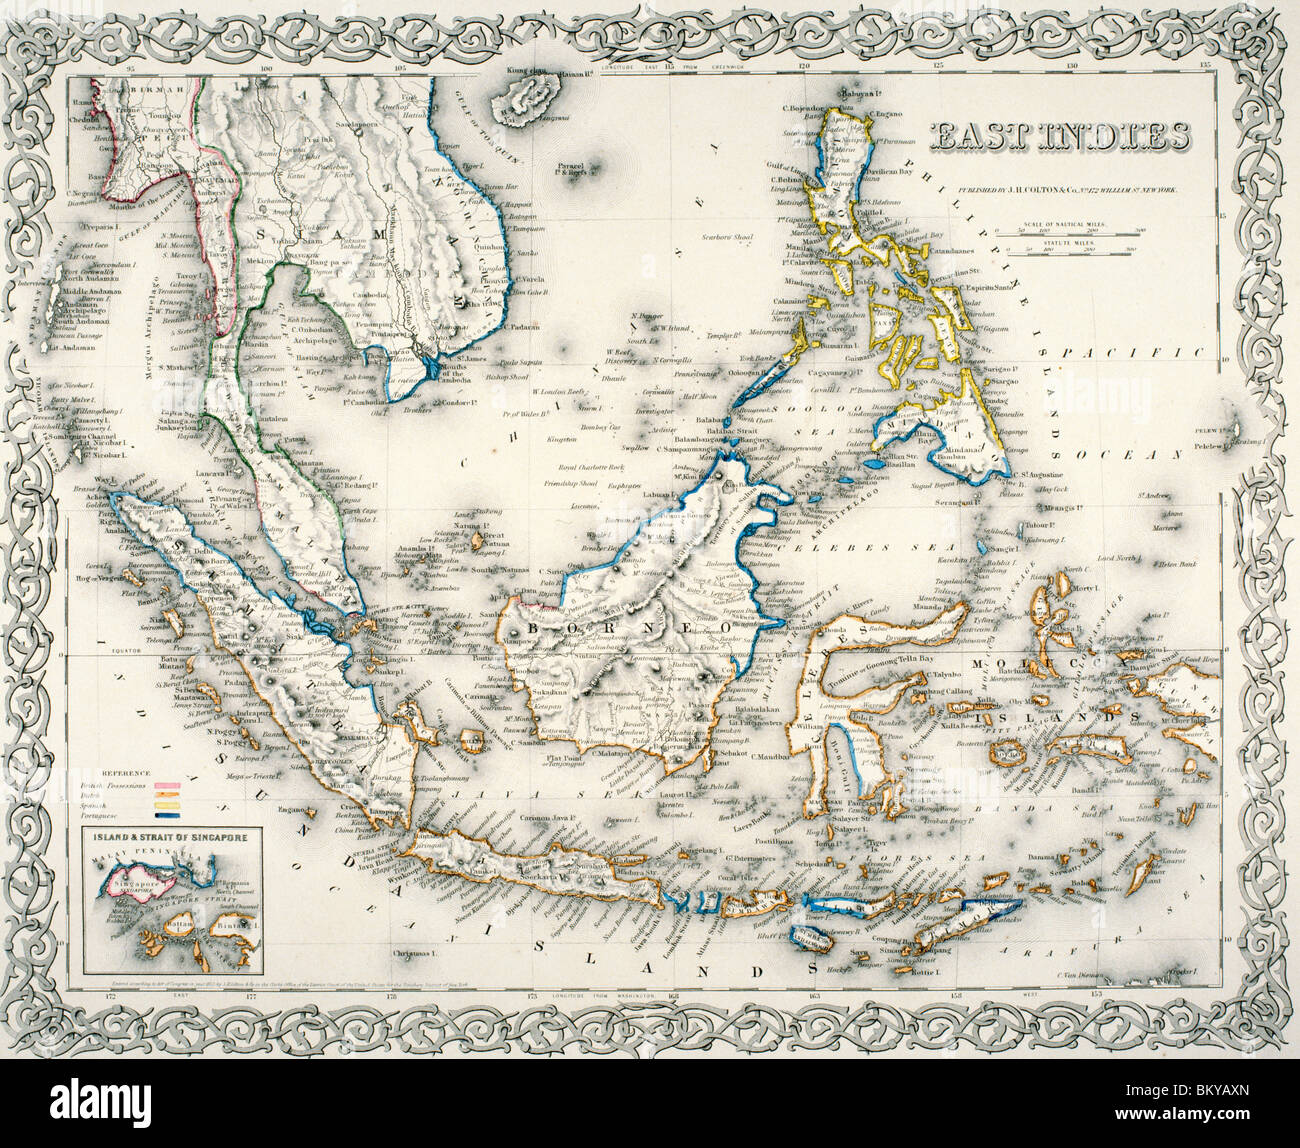 Carte des Indes orientales, par J.H. Colton et Co., 1855 Banque D'Images